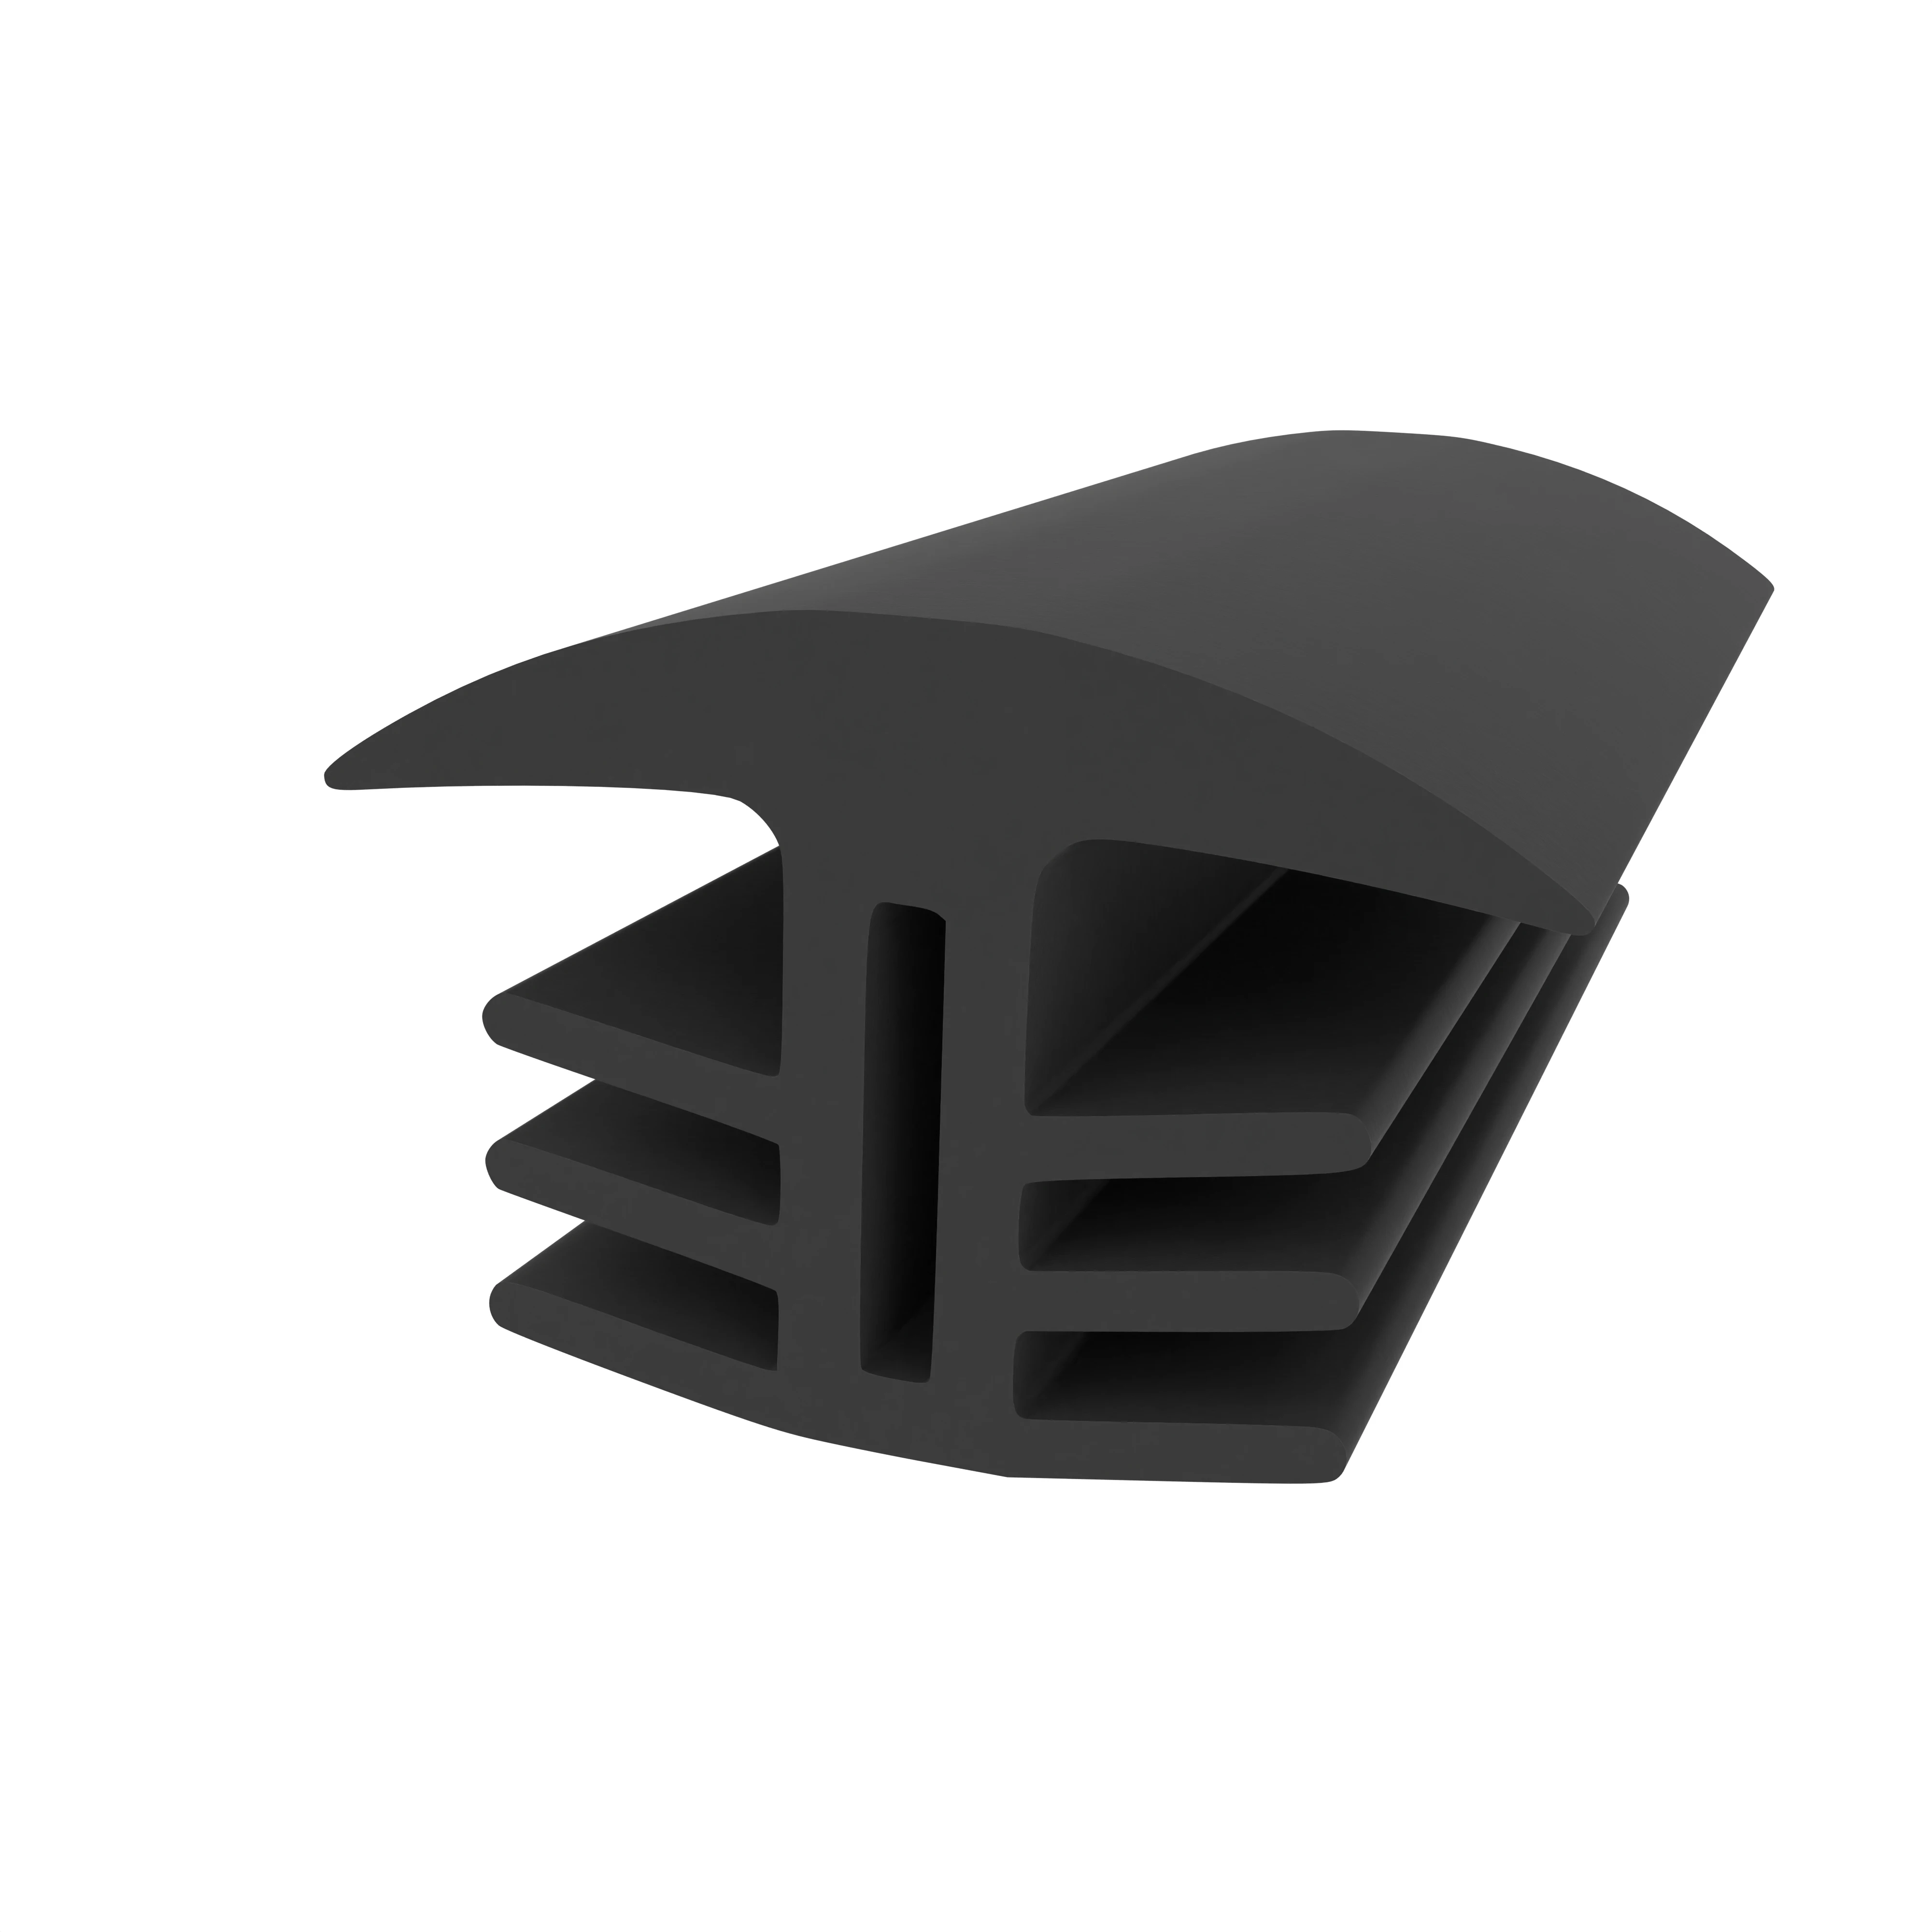 Fugenverschlussprofil für Bauwerksfugen in schwarz